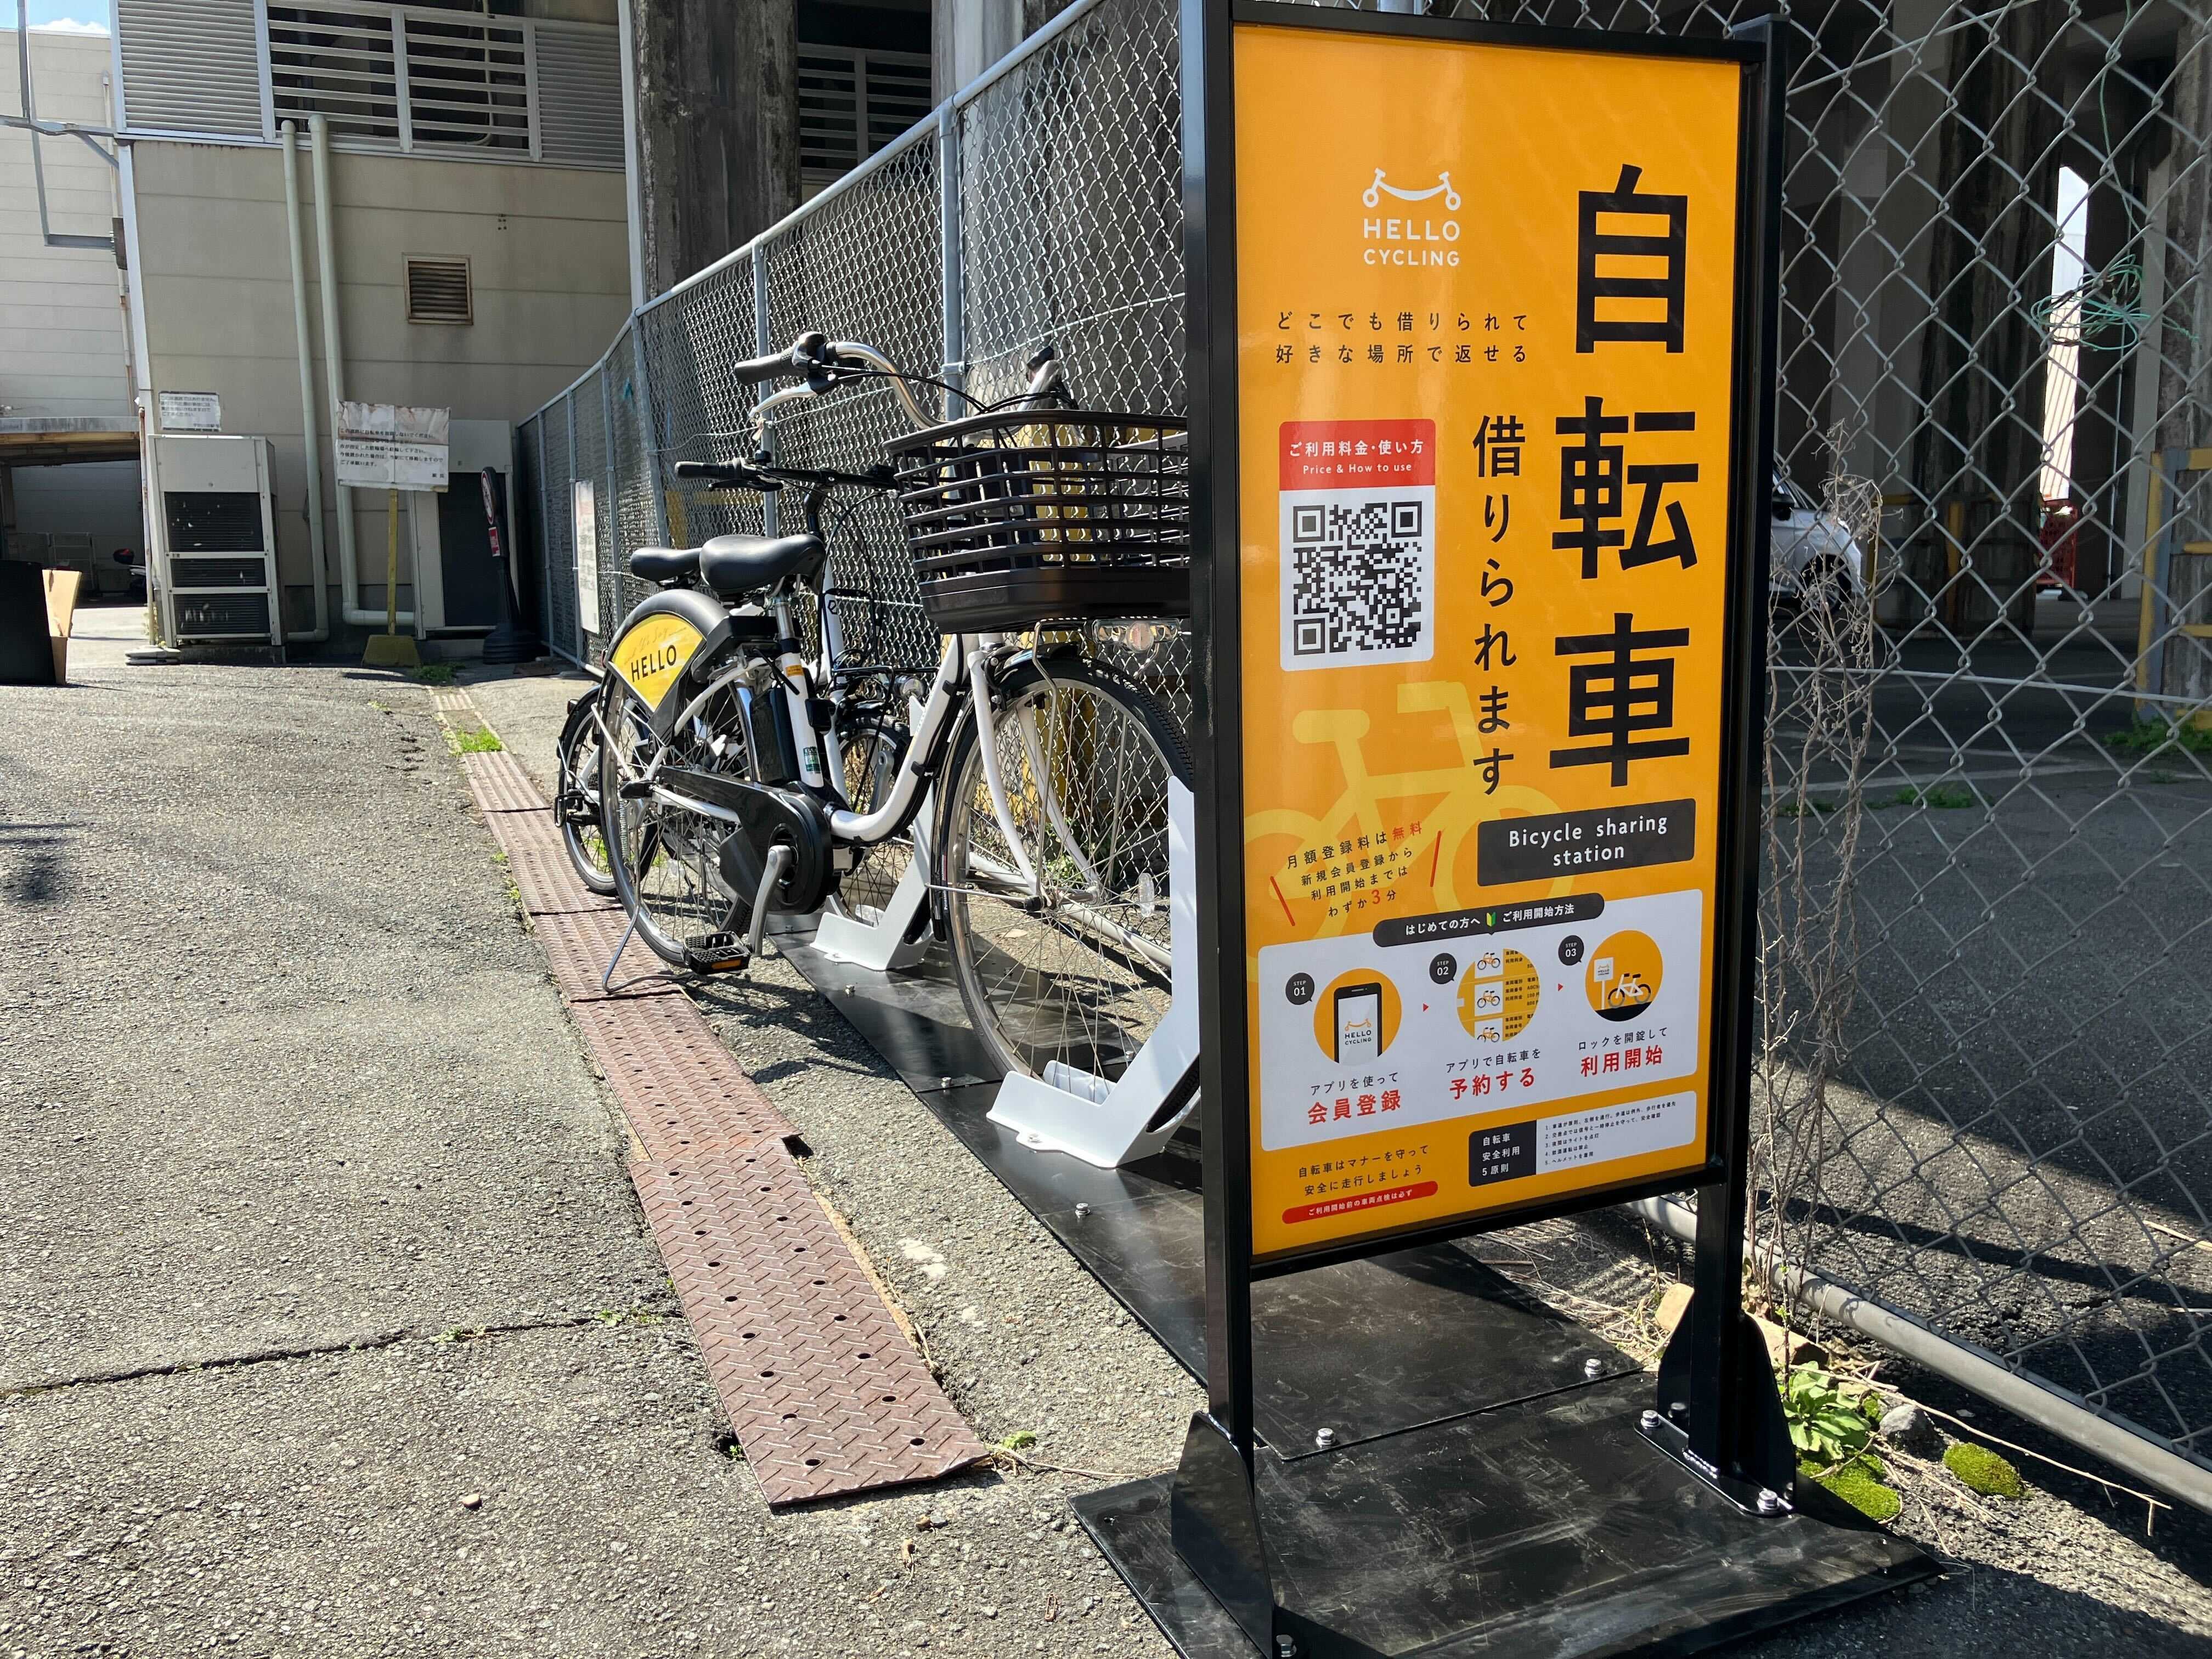 近鉄宇治山田駅 (HELLO CYCLING ポート) image